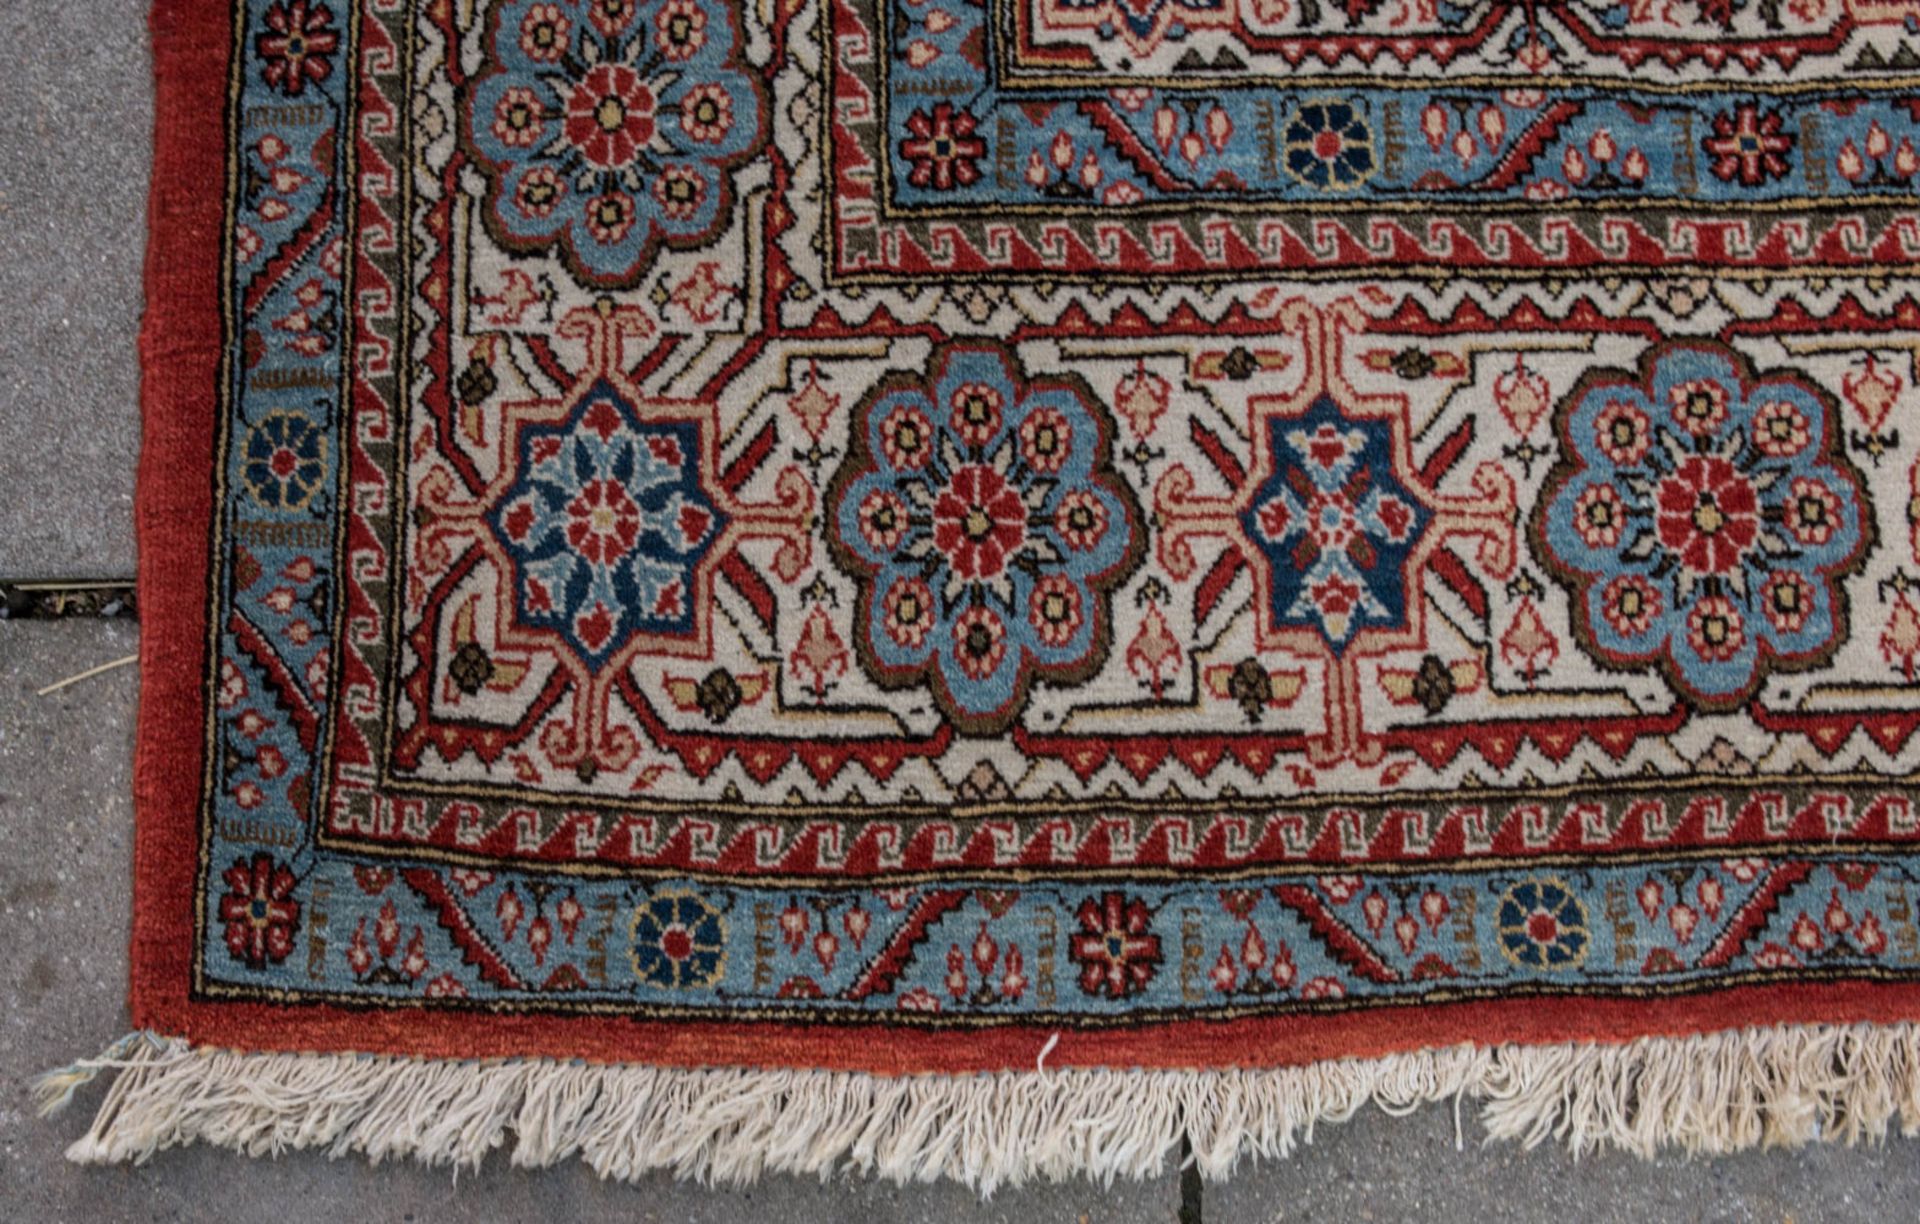 Großer Teppich in rot und blau, Baumwolle.360 x 337 cm - Bild 6 aus 8